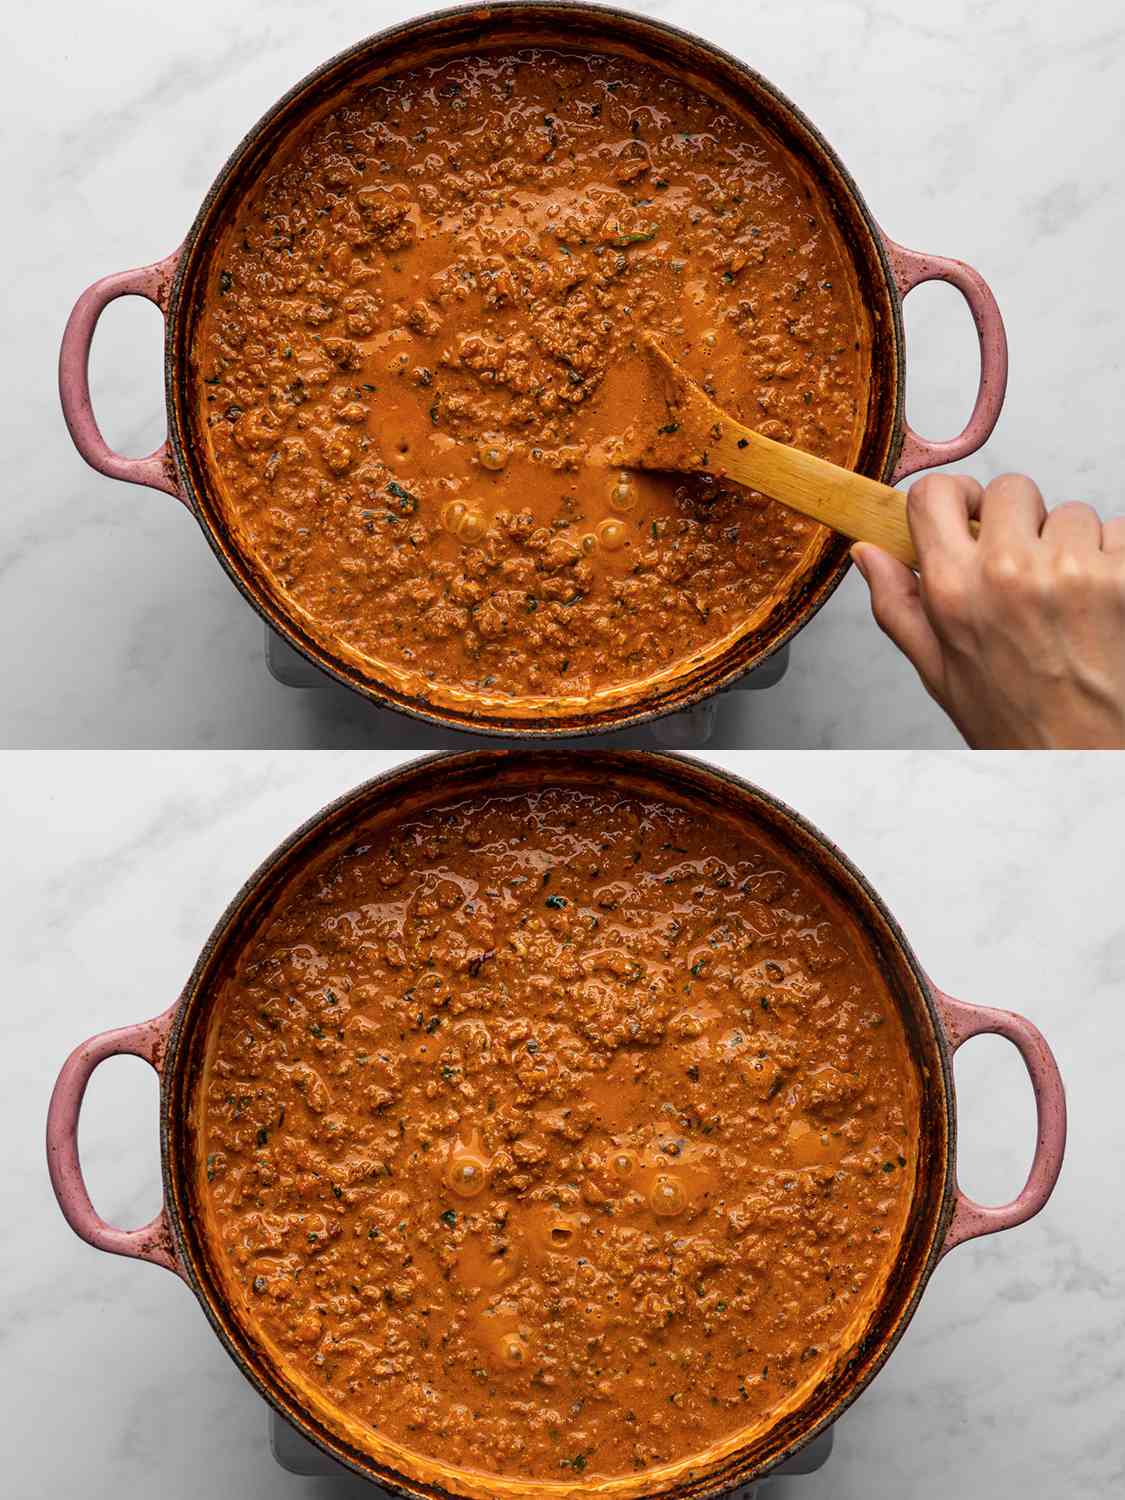 两幅图像的拼贴画。上图显示了重奶油、帕尔马干酪、鱼露和剩余的欧芹搅拌到酱汁中，并在荷兰烤箱中煮沸。下面的图片显示了荷兰烤箱里面的乳化酱汁。gydF4y2Ba